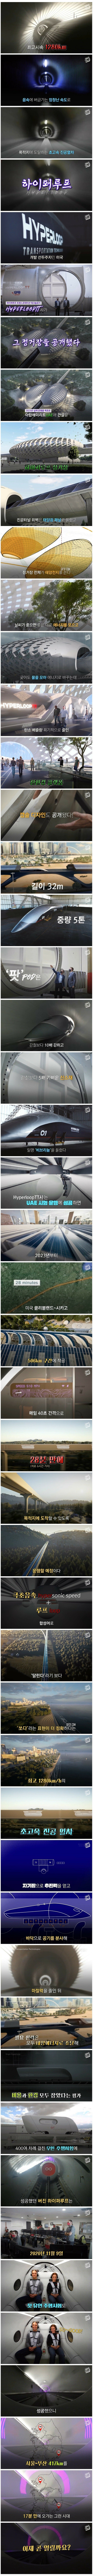 서울-부산 17분, 하이퍼루프 상용화.jpg